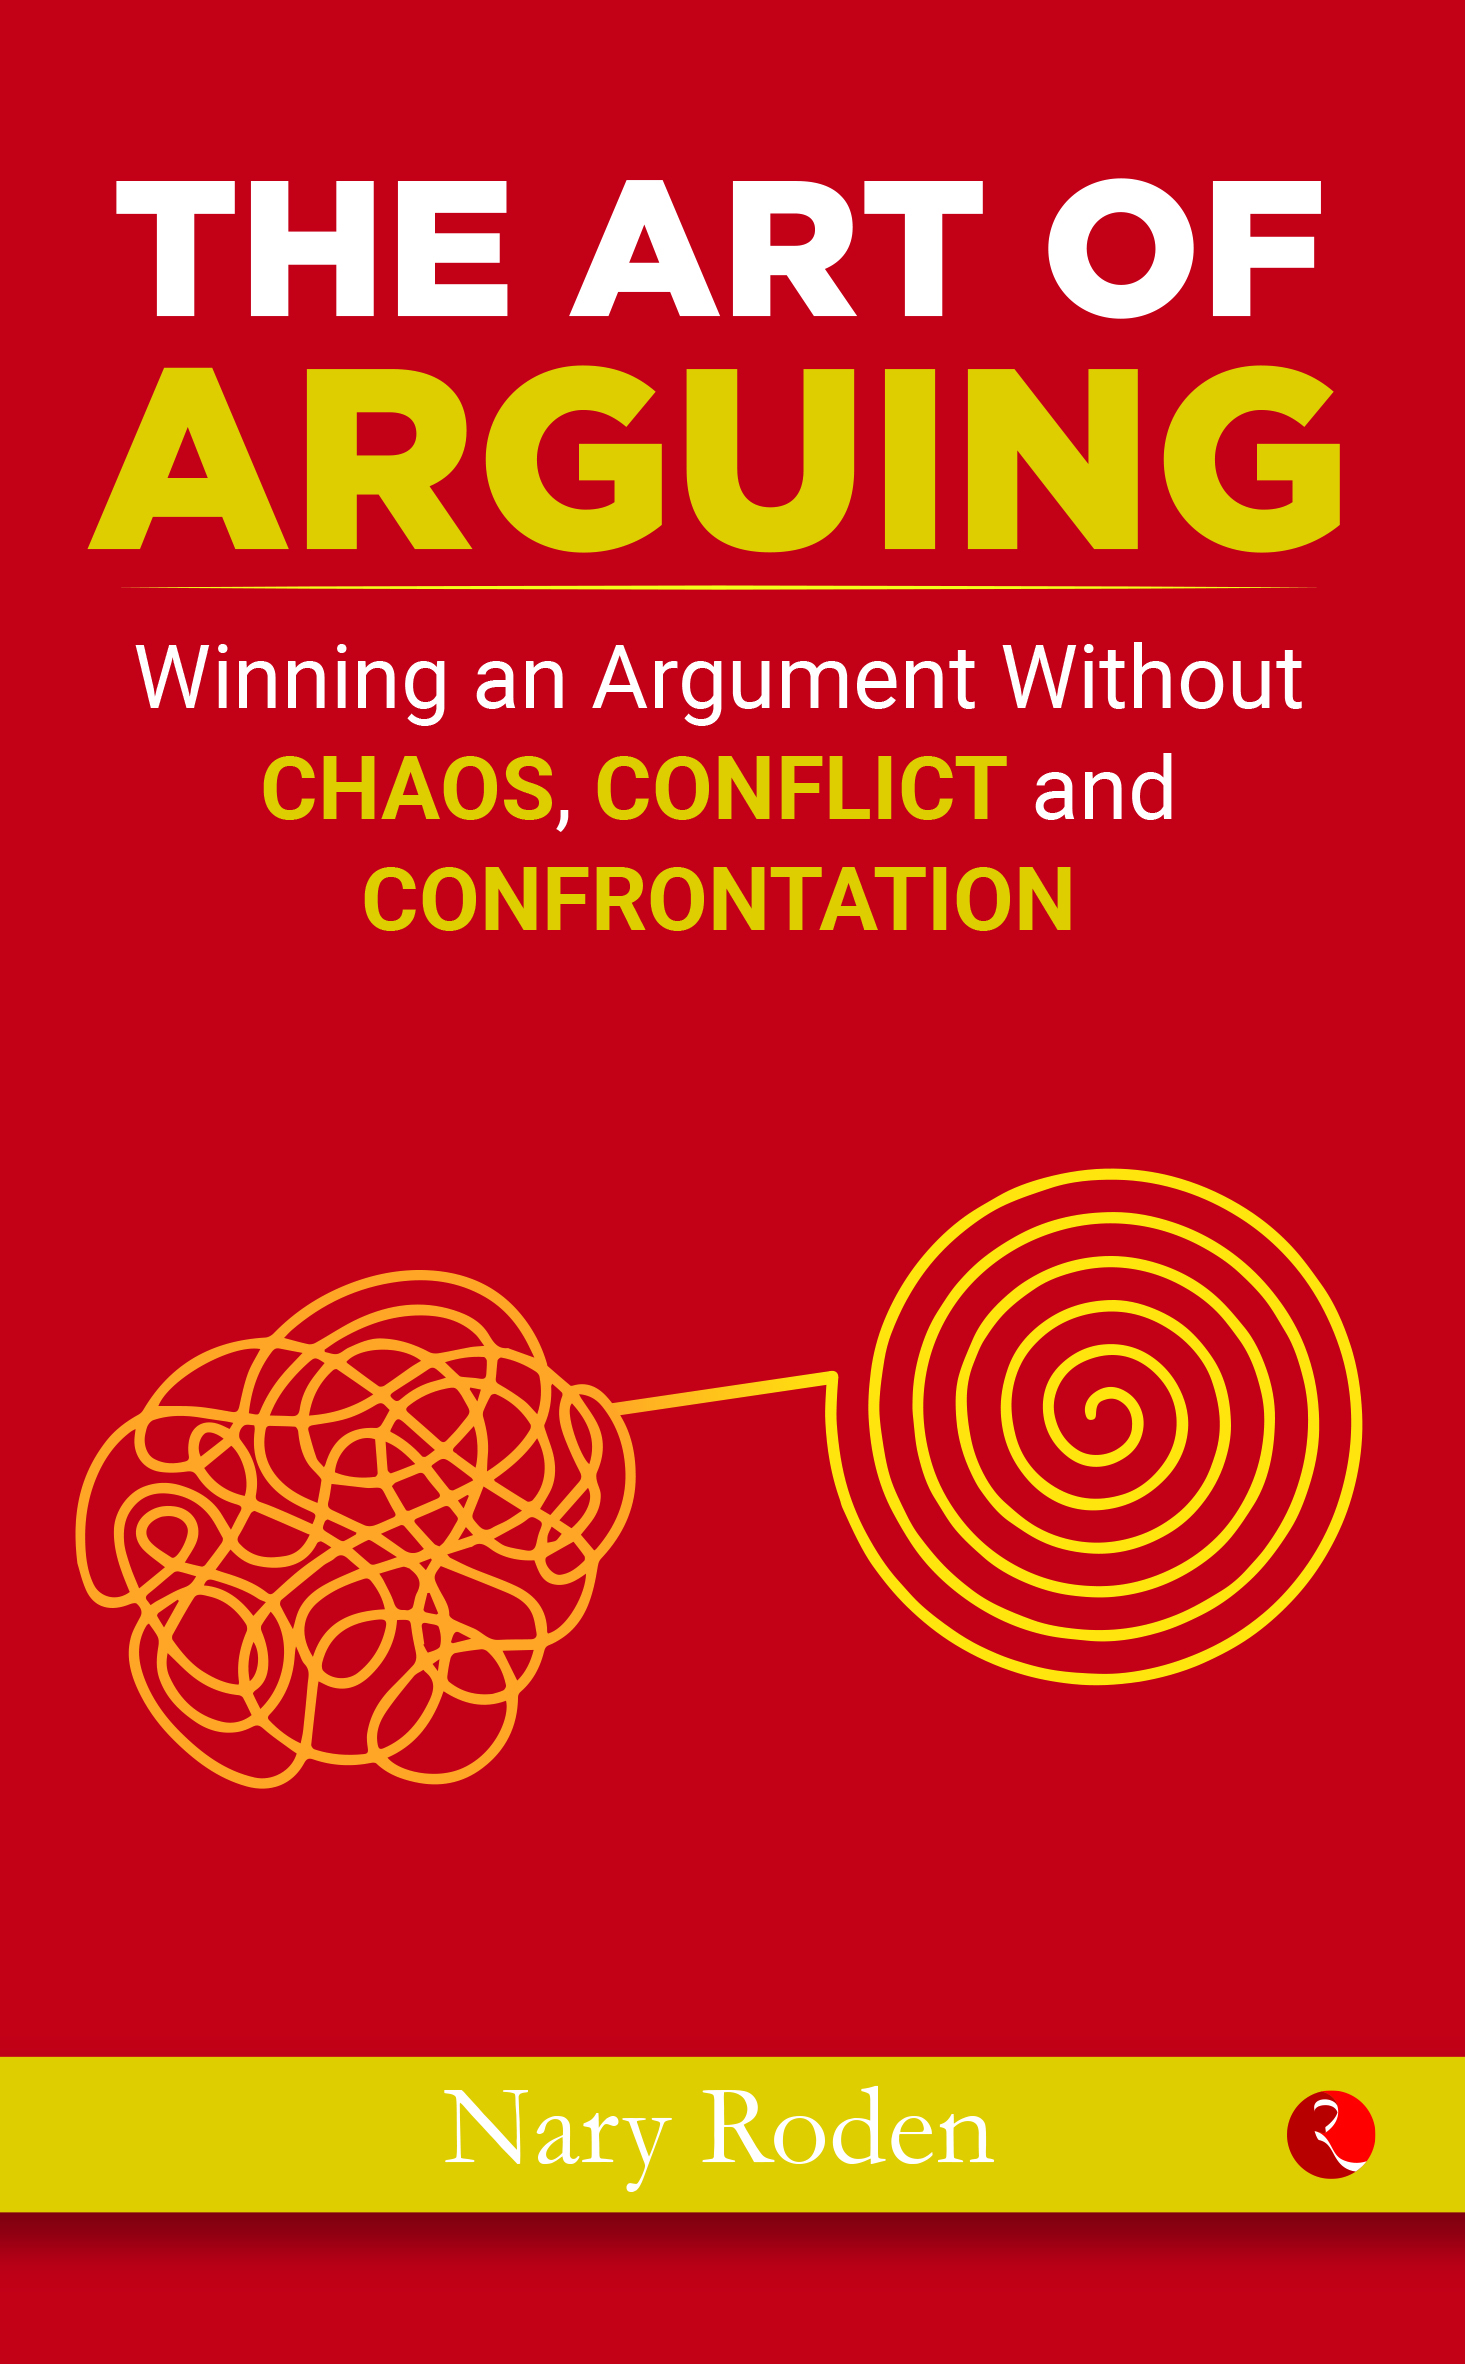 Art of Arguing spread